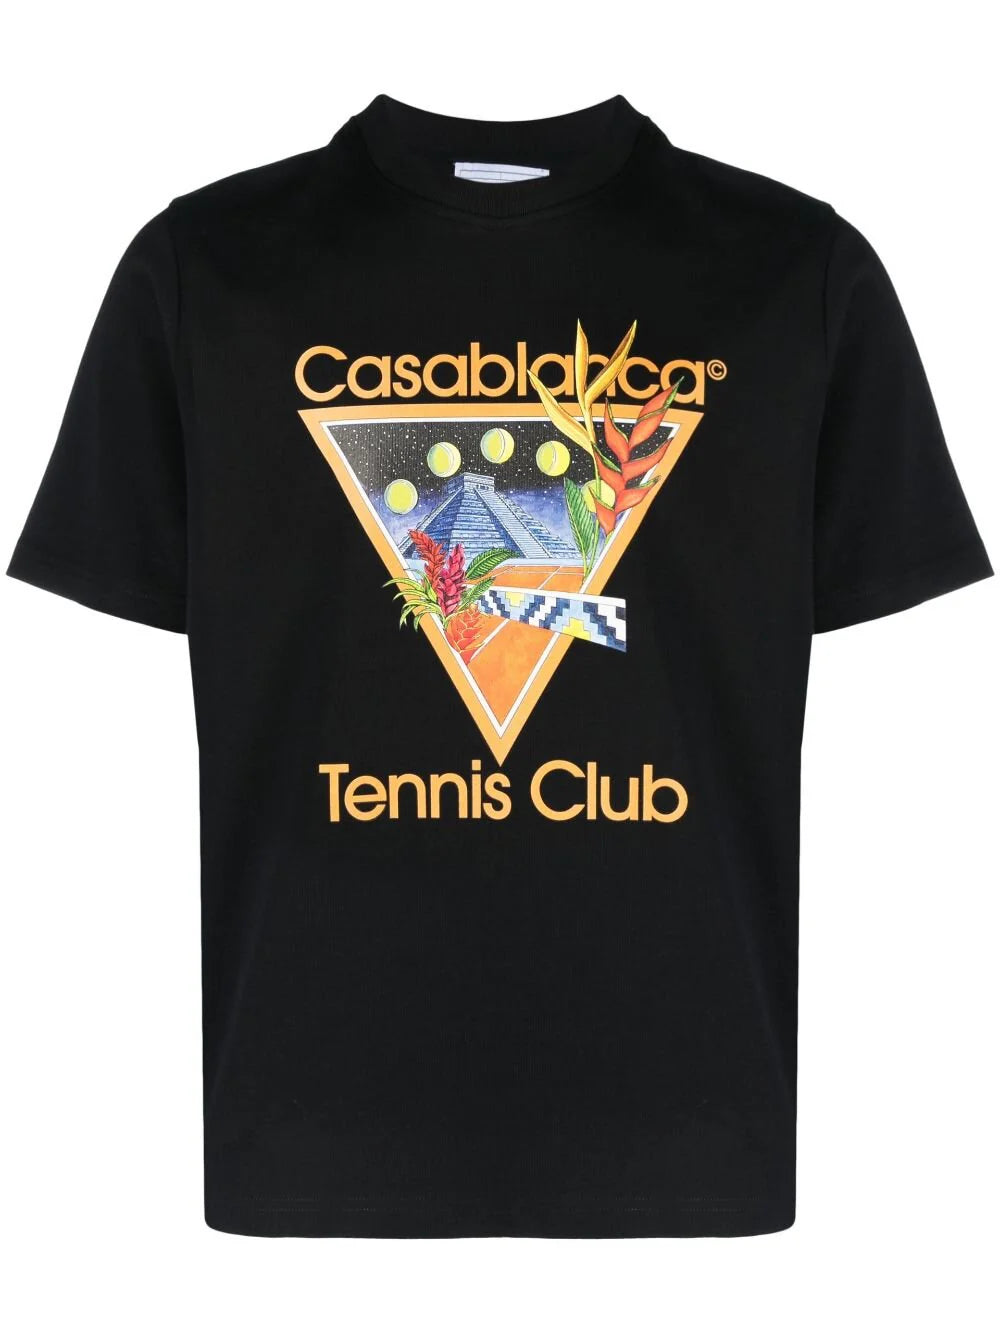 Casablanca Tennis Club Tshirt Black